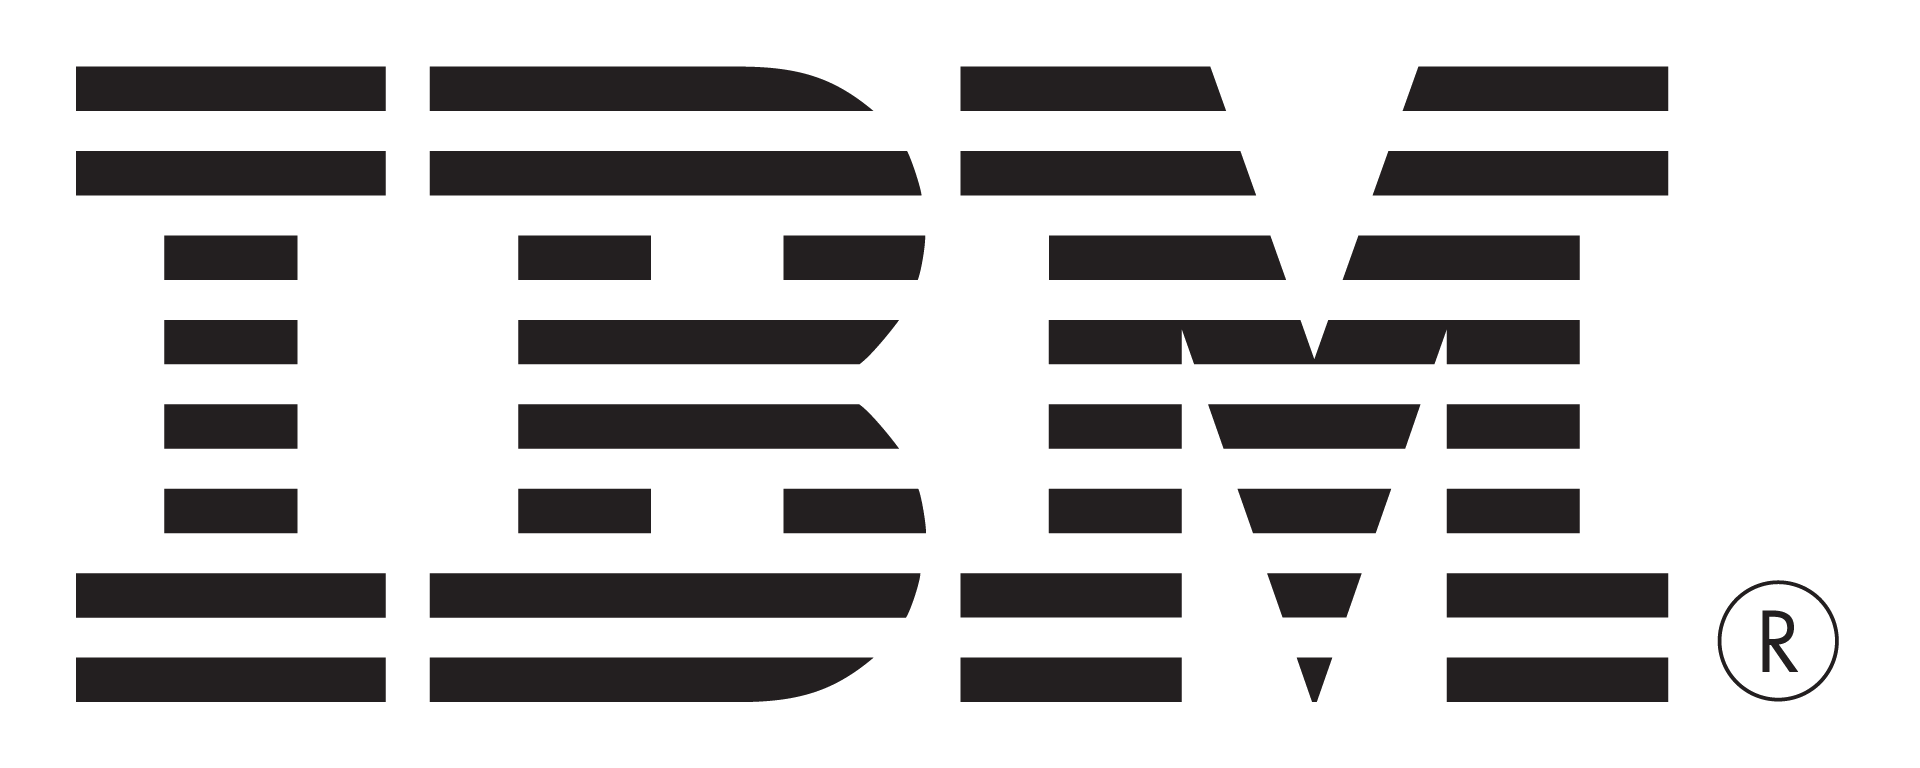 File:Older IBM Logo 2.png